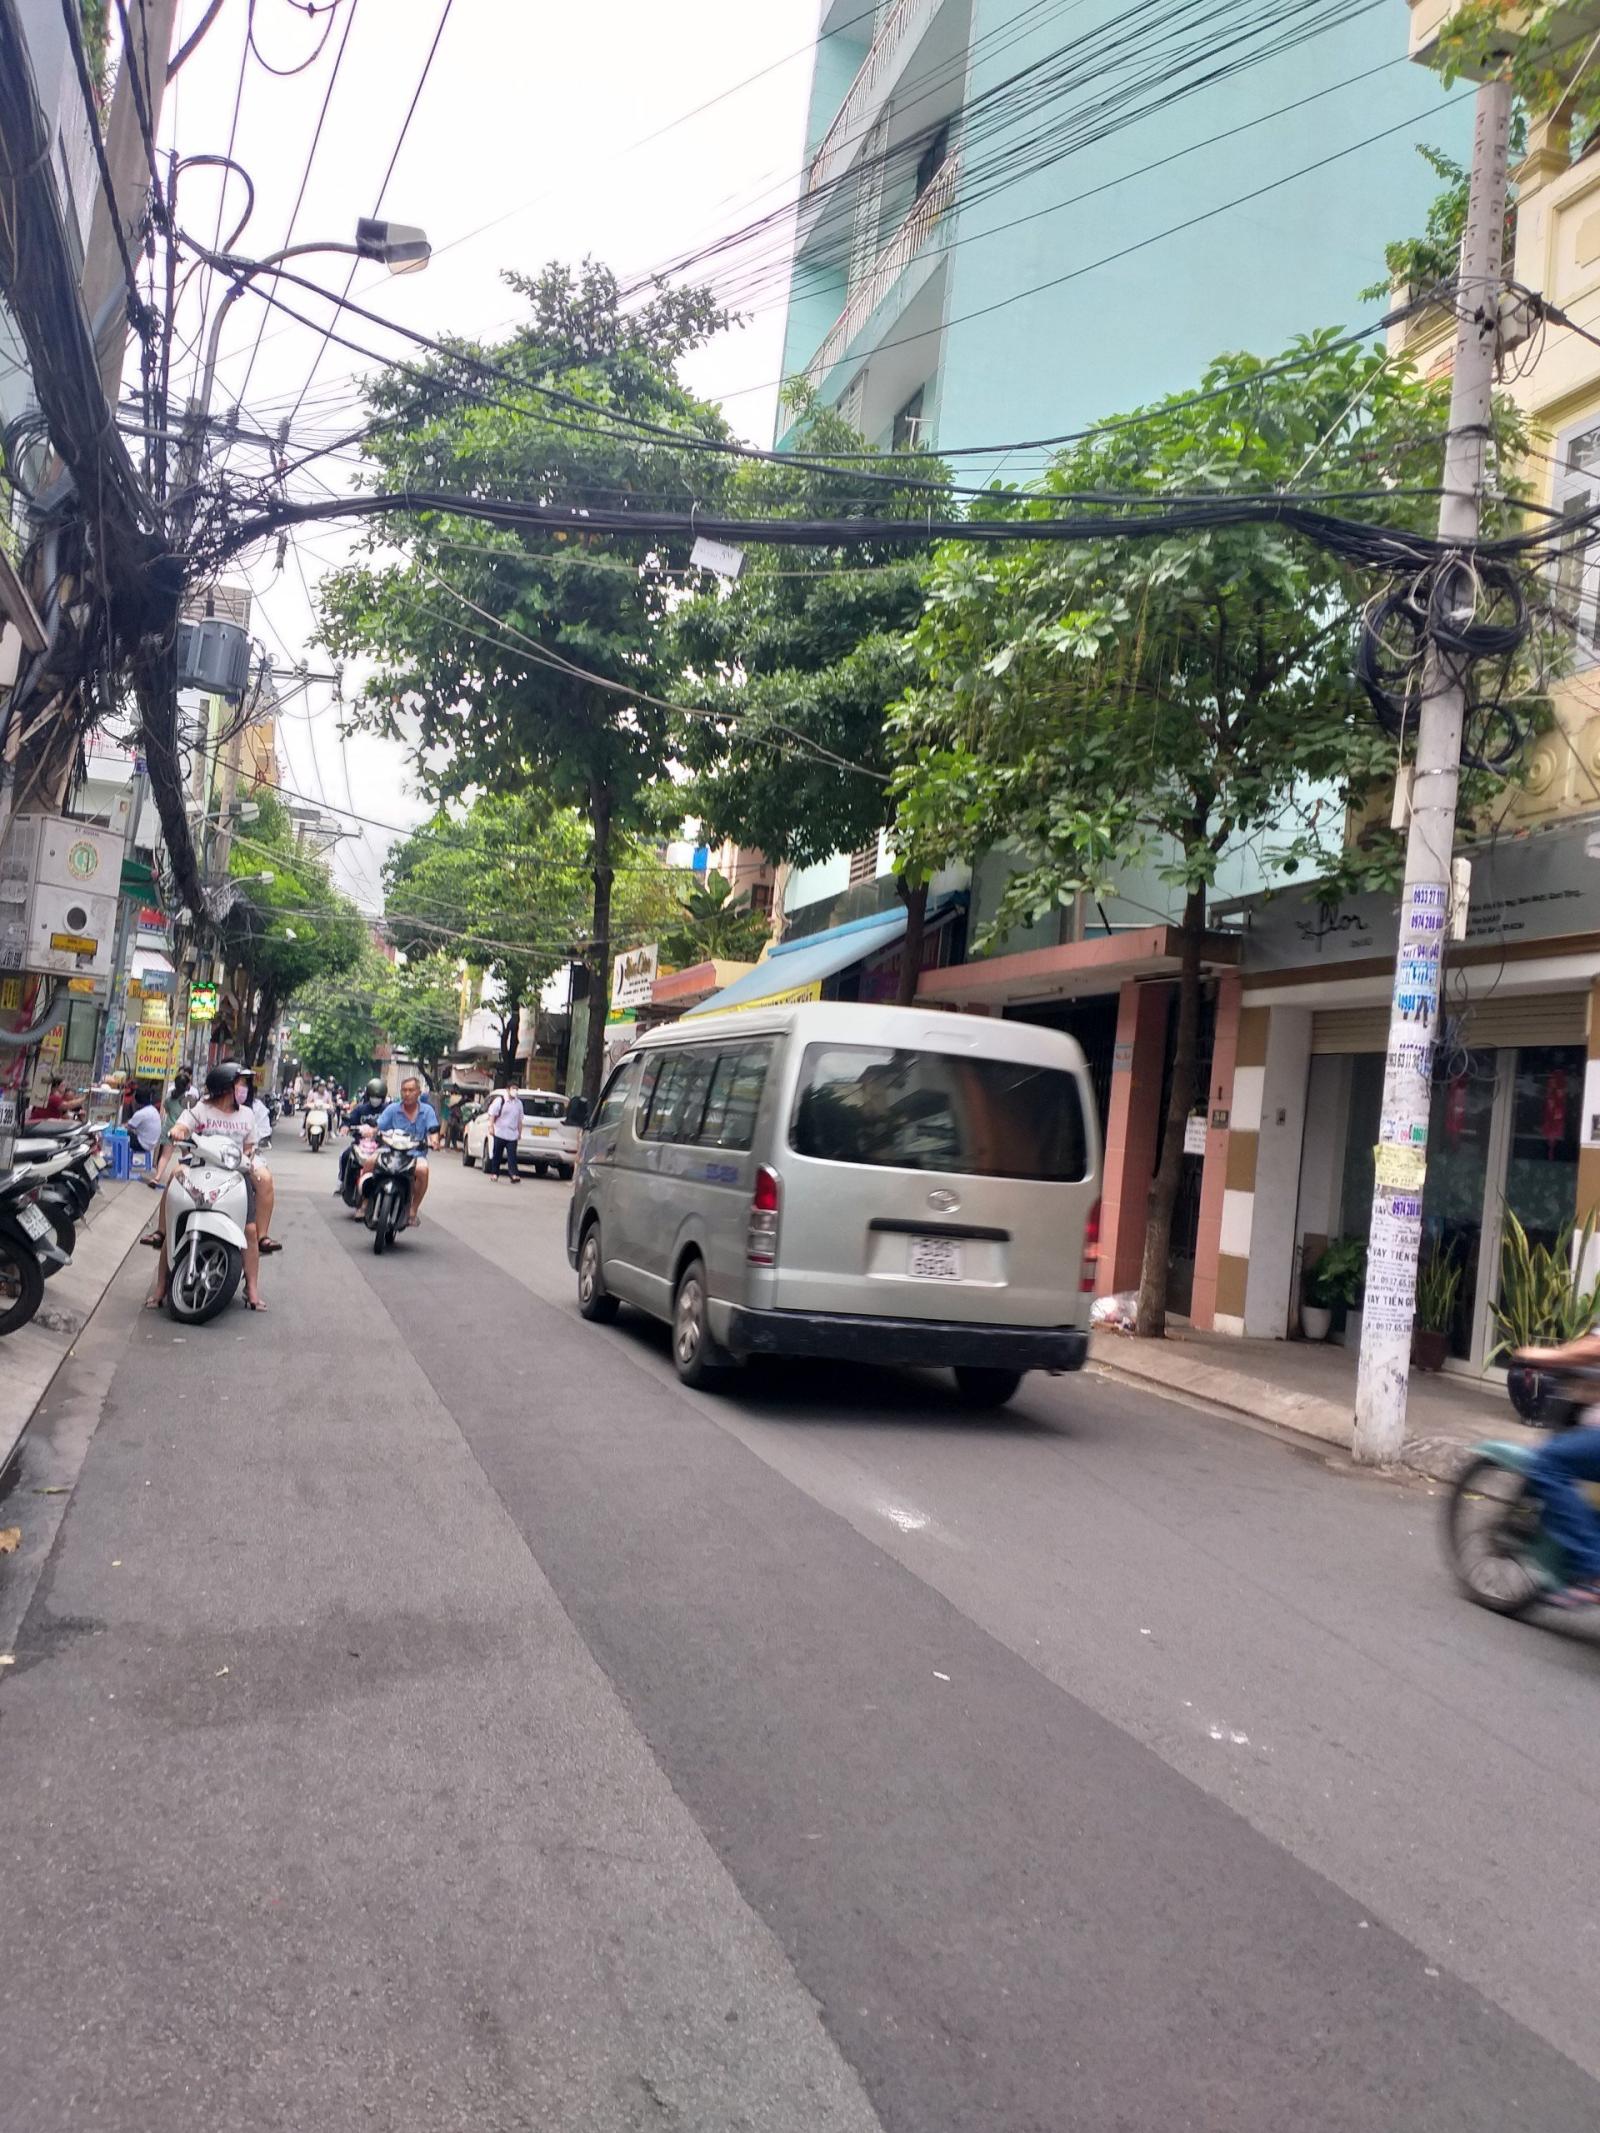 Bán nhà hẻm xe hơi góc 2 mặt tiền đường Lê Văn Sỹ Q.Tân Bình, DT: 7m x 20m, giá chỉ 25 tỷ TL.